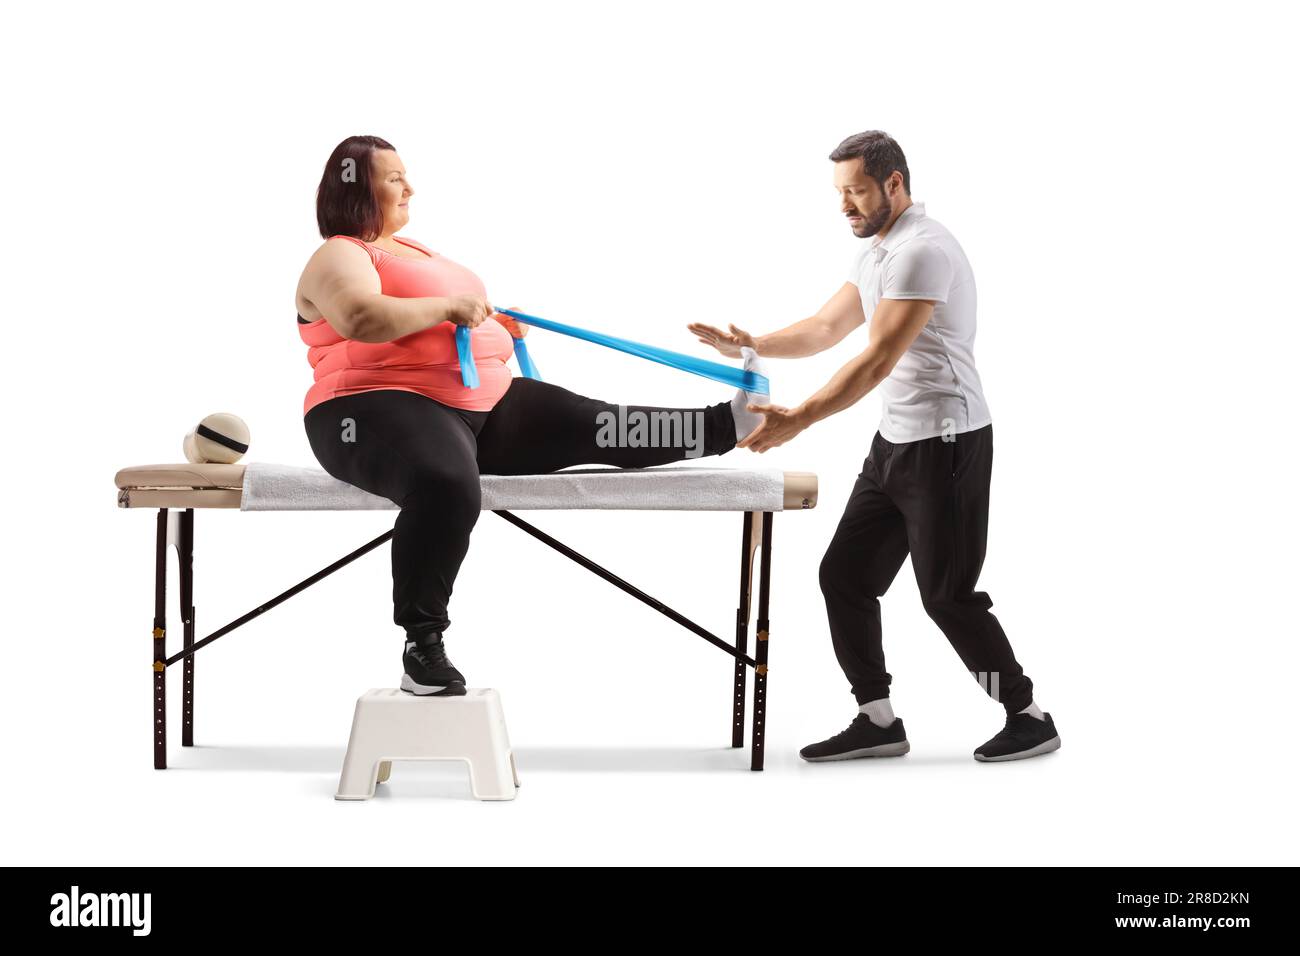 Physiothérapeute aidant une femme en surpoids s'exerçant avec un bracelet d'étirement isolé sur fond blanc Banque D'Images